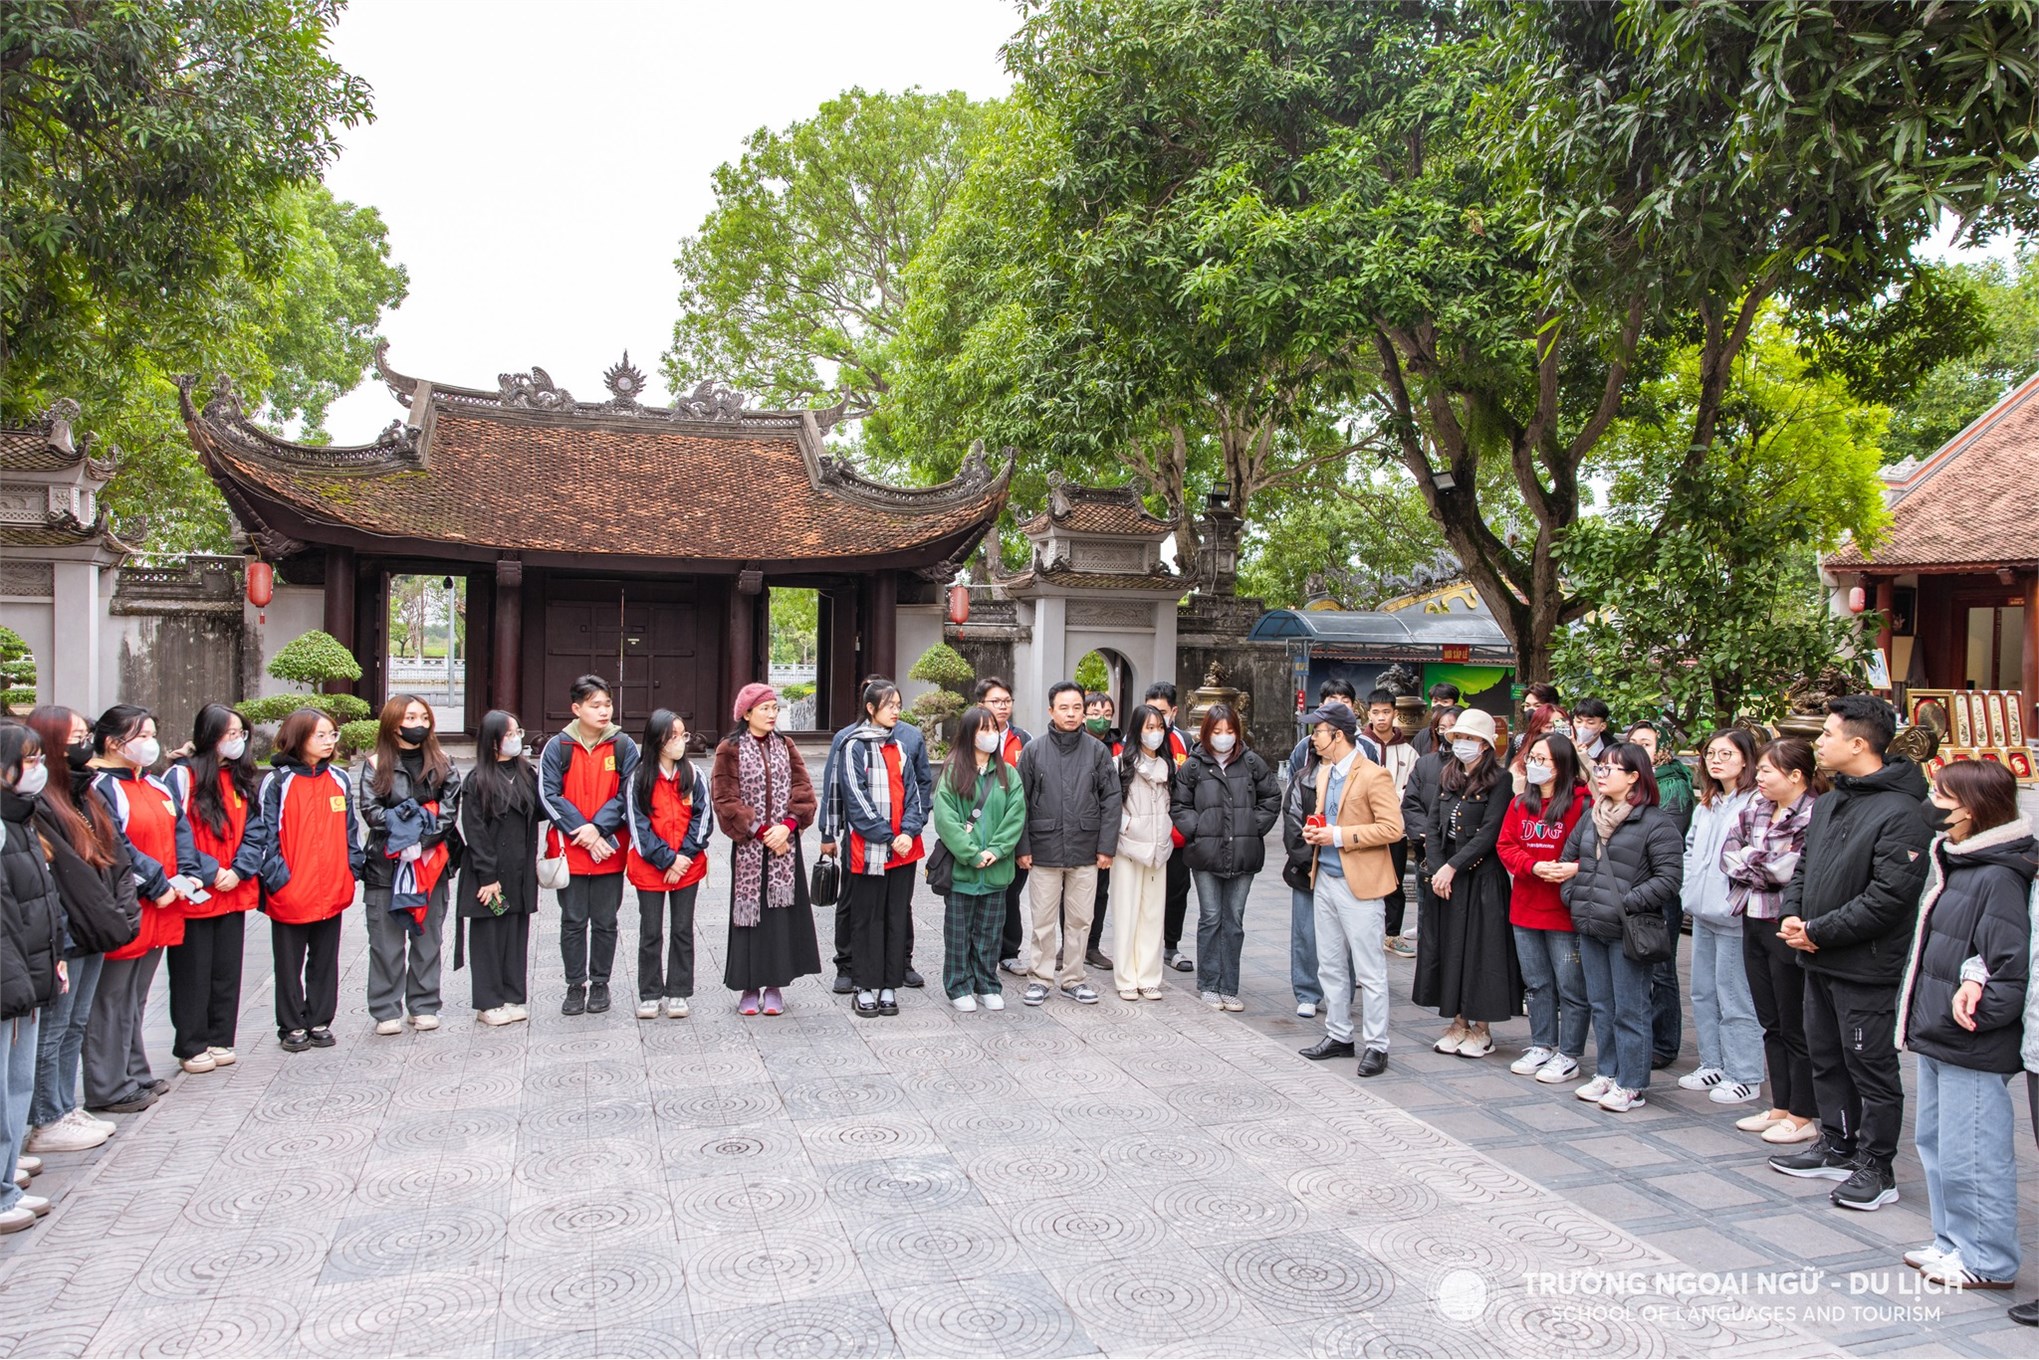 Tìm về văn hóa Kinh Bắc cùng sinh viên ngành Ngôn ngữ học, Trường Ngoại ngữ - Du lịch, Trường Đại học Công nghiệp Hà Nội